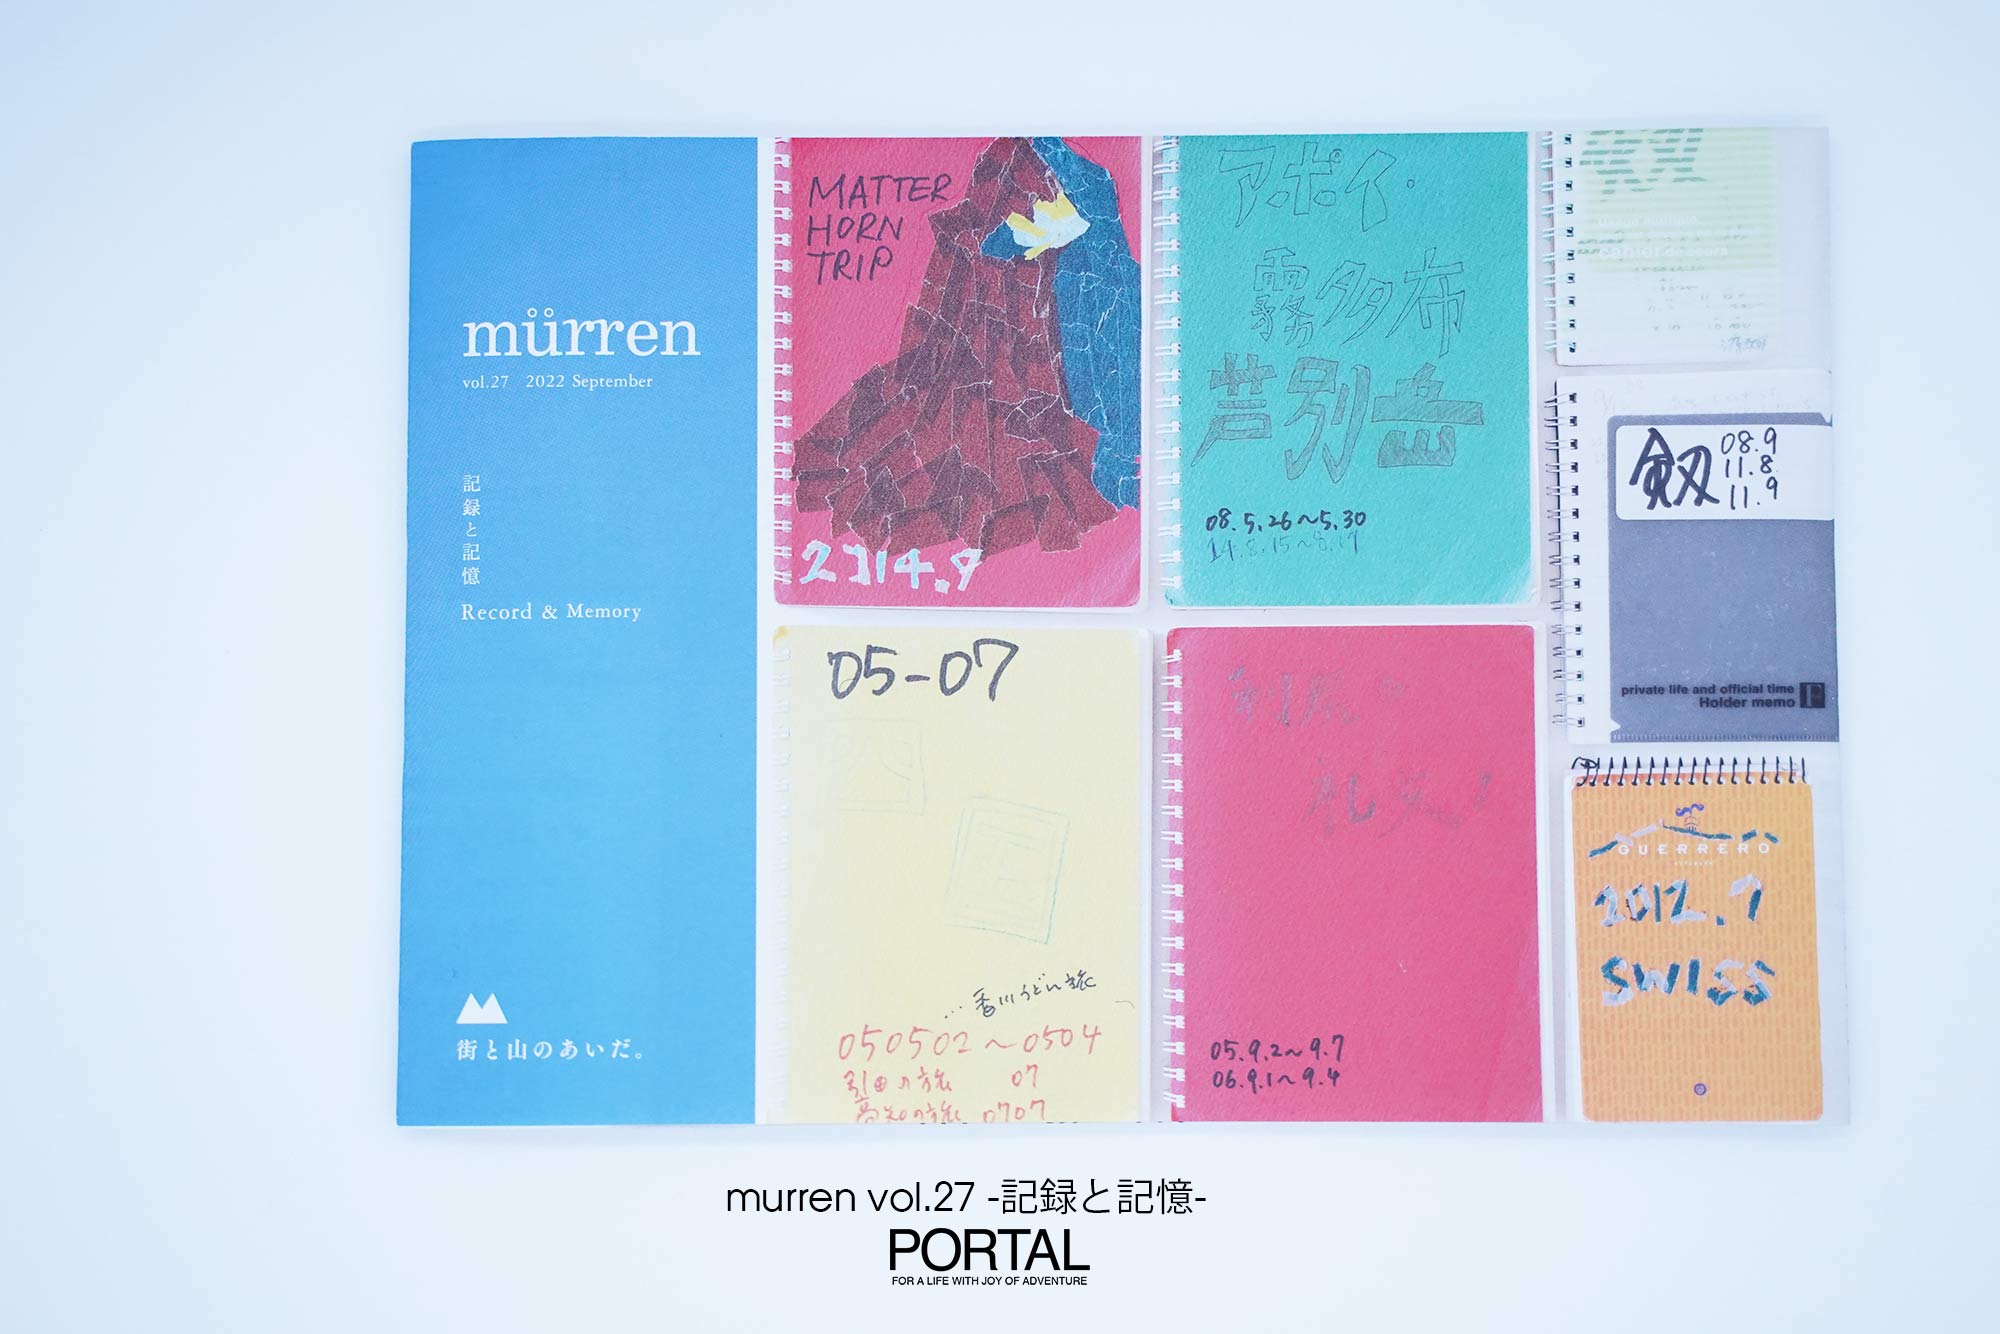 murren vol.27 -記録と記憶-